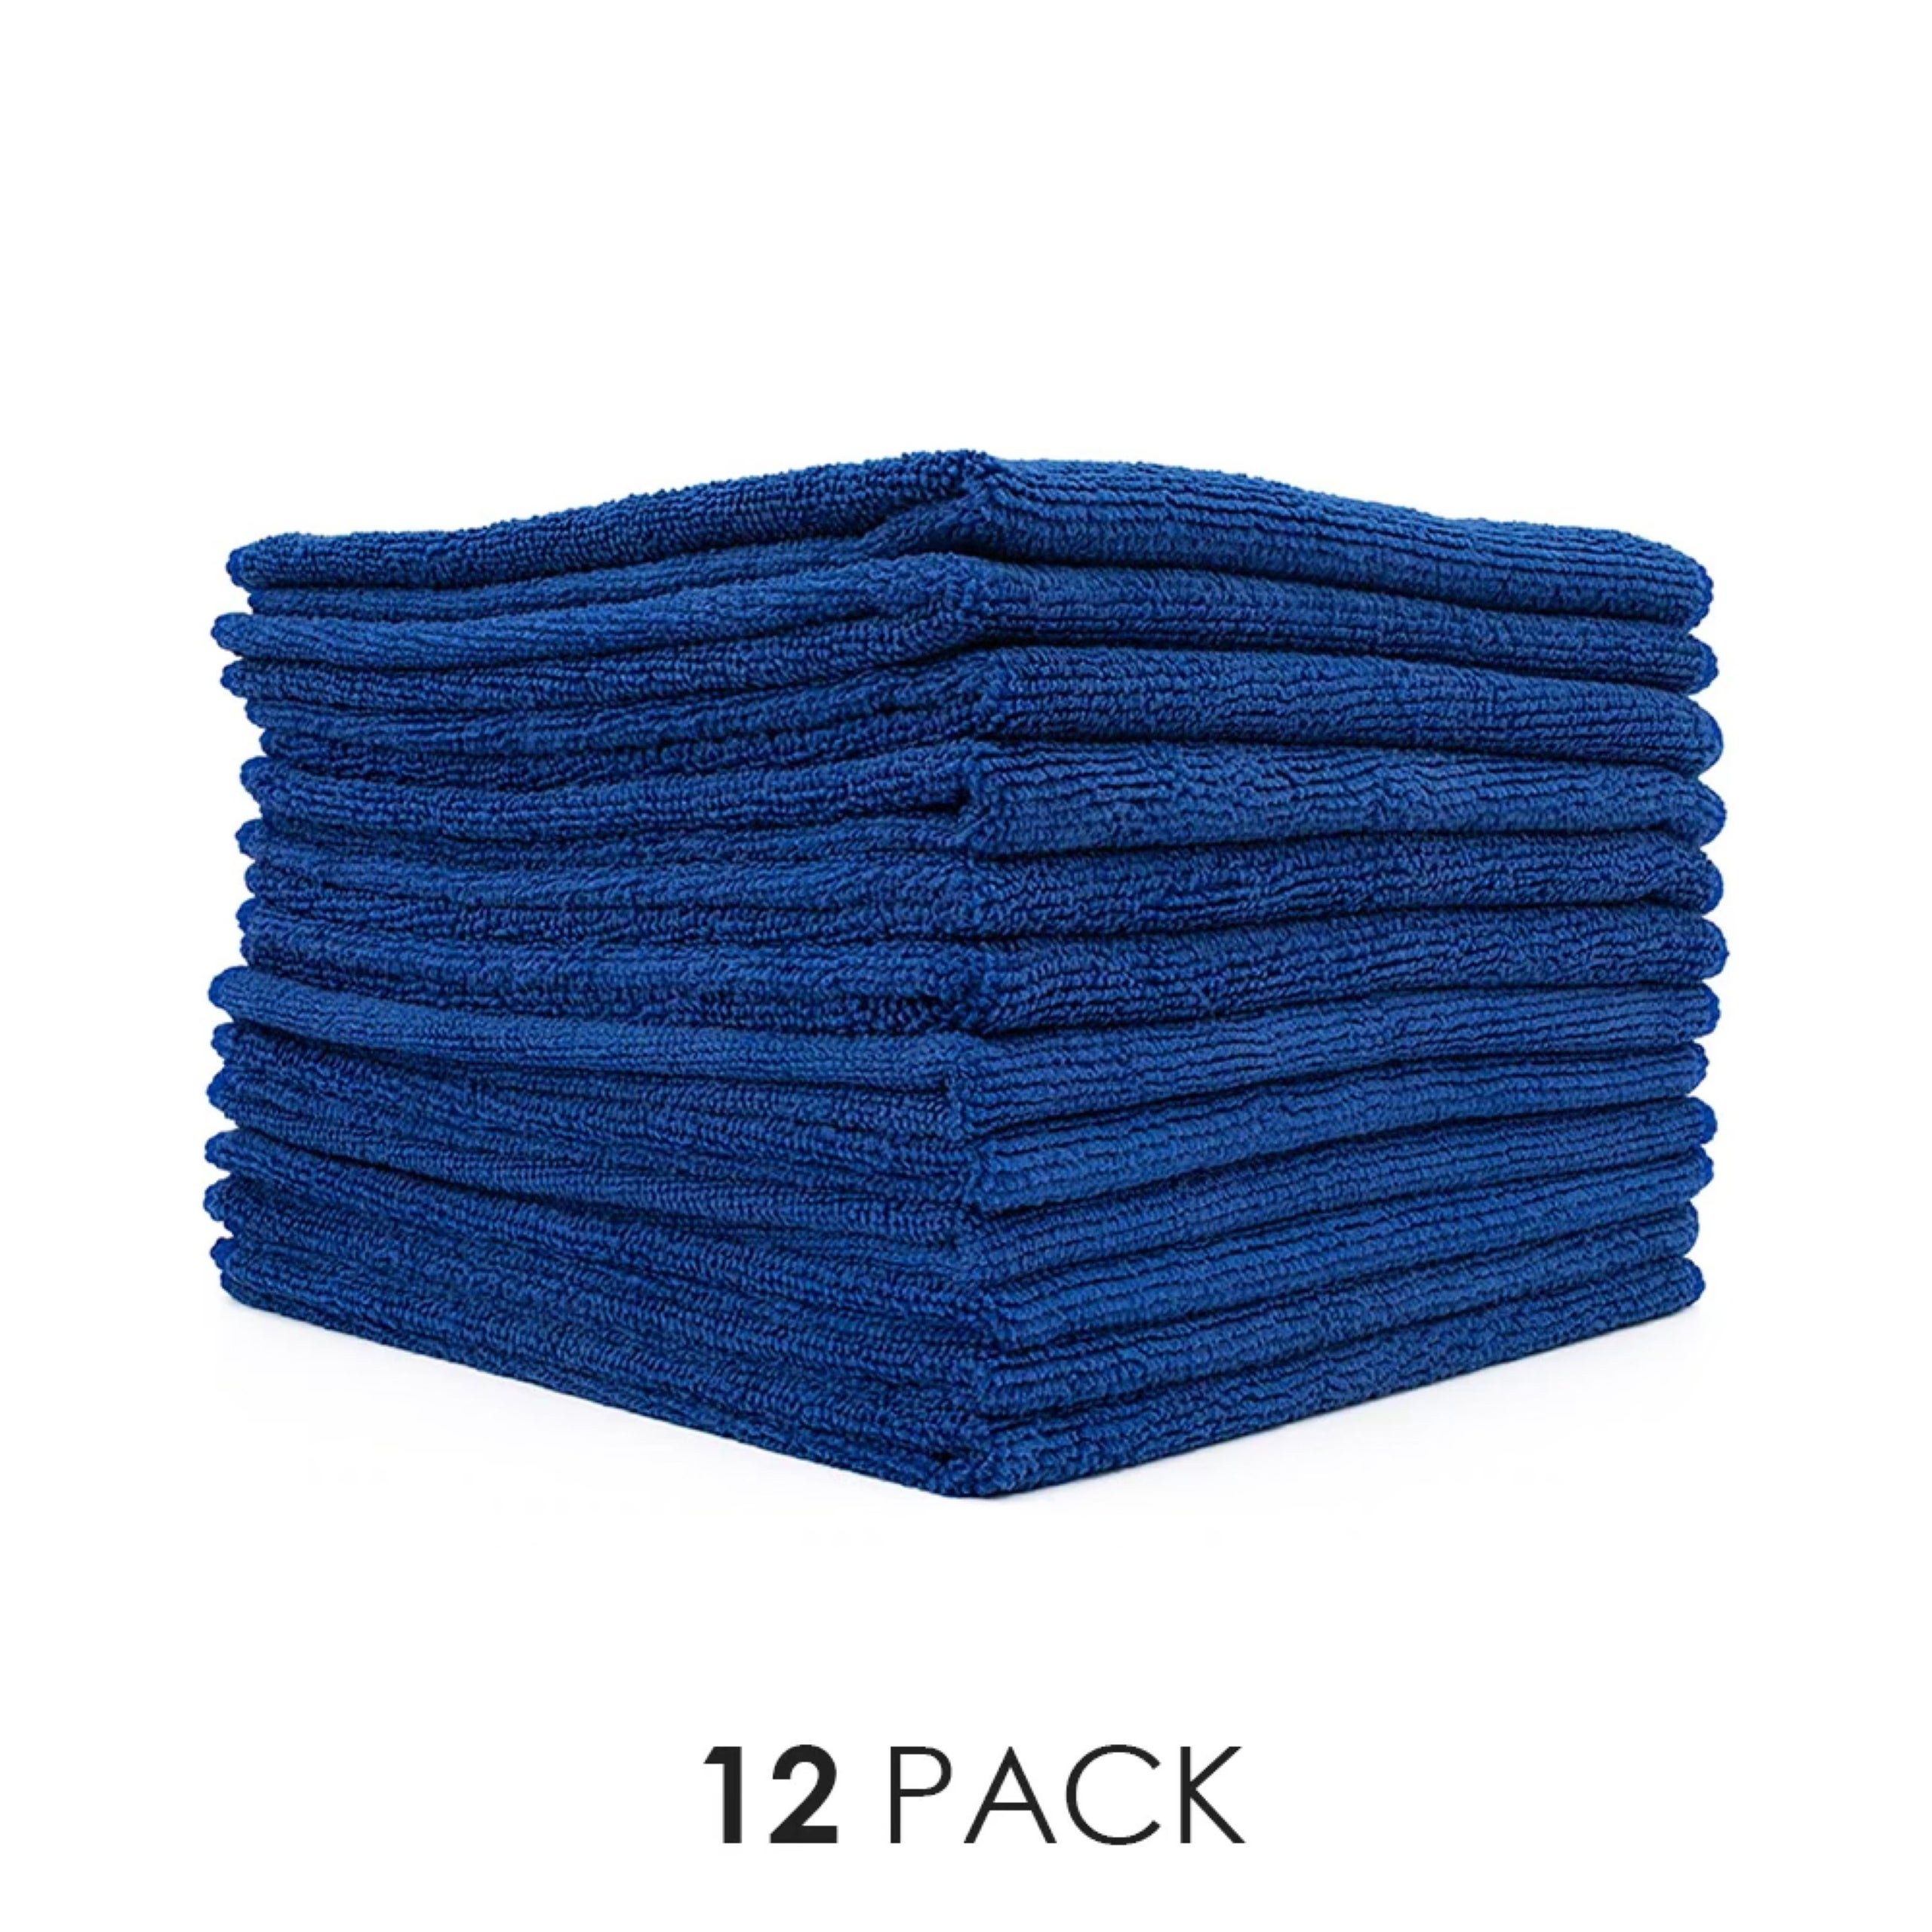 Blue Microfiber Towel - 12 pack